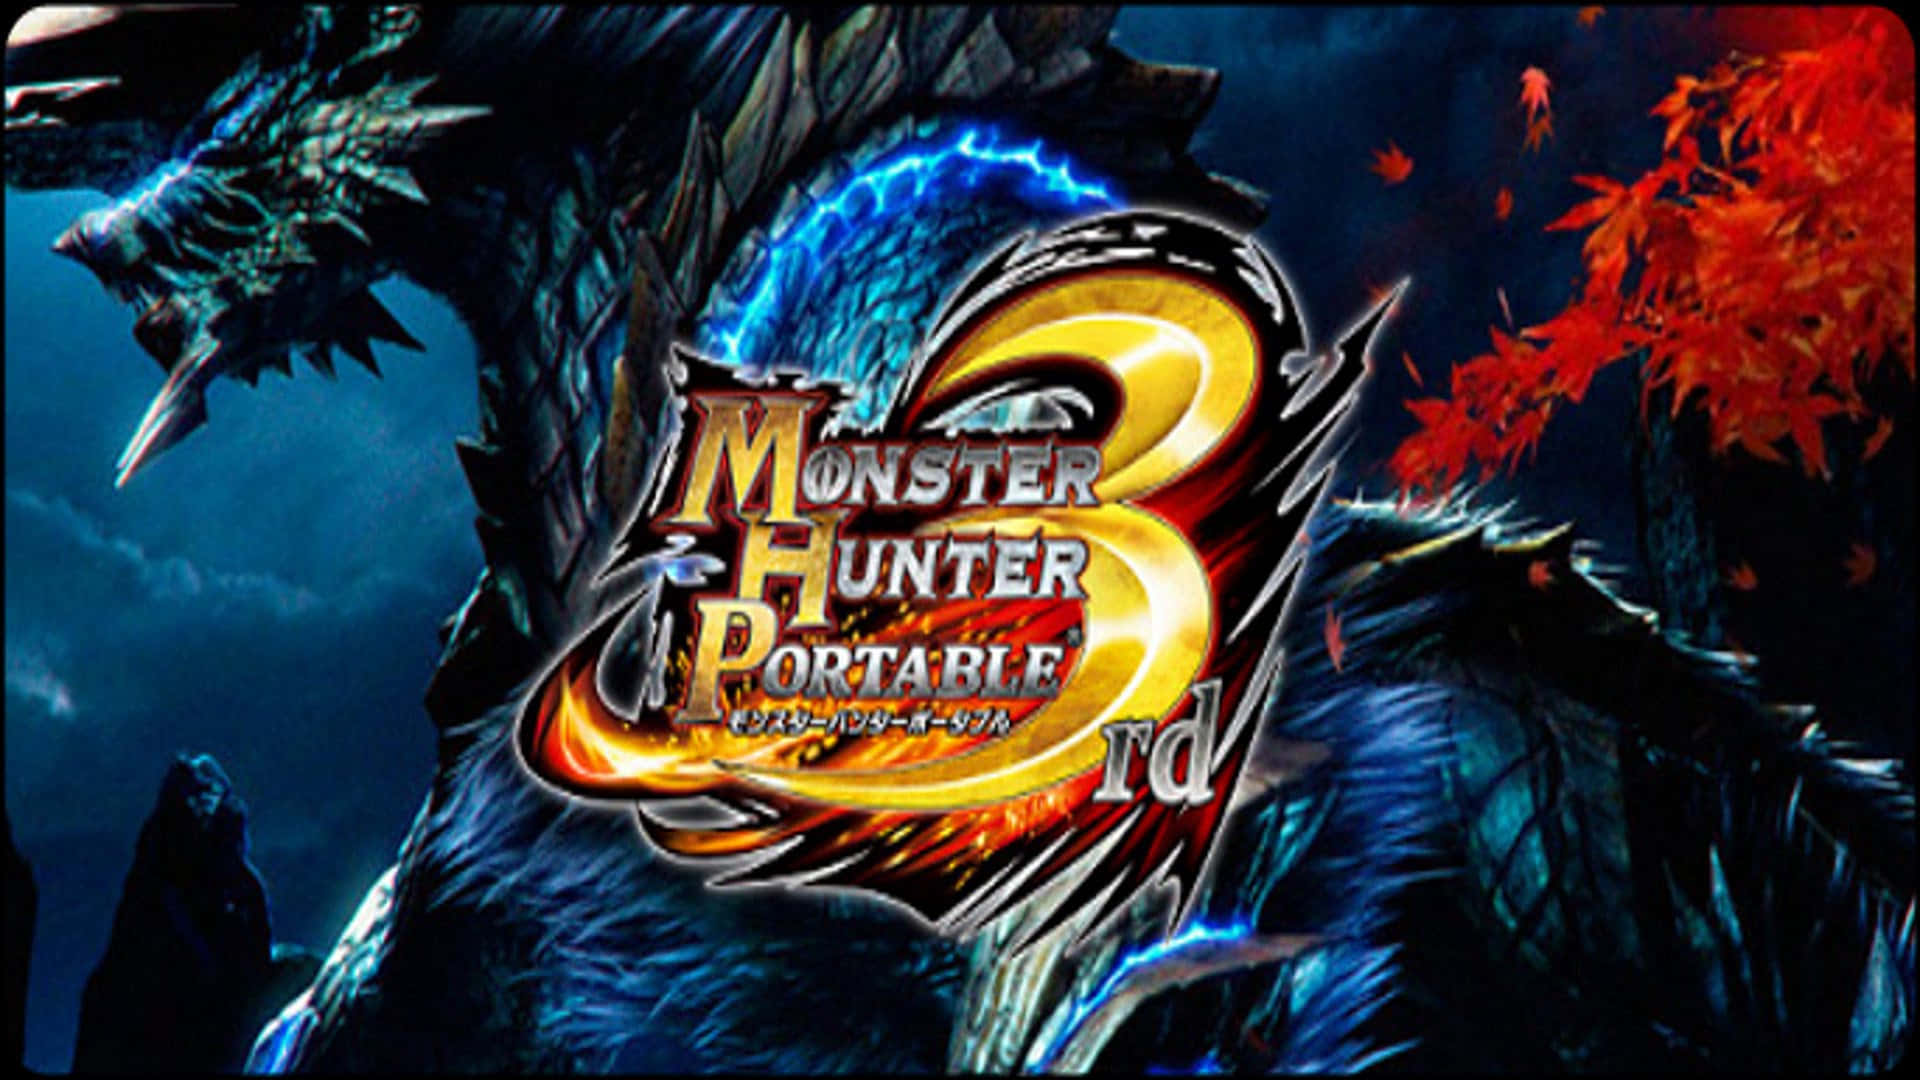 Erlebensie Spannende Jagden Und Stellen Sie Mächtige Waffen Her In Monster Hunter 3. Wallpaper